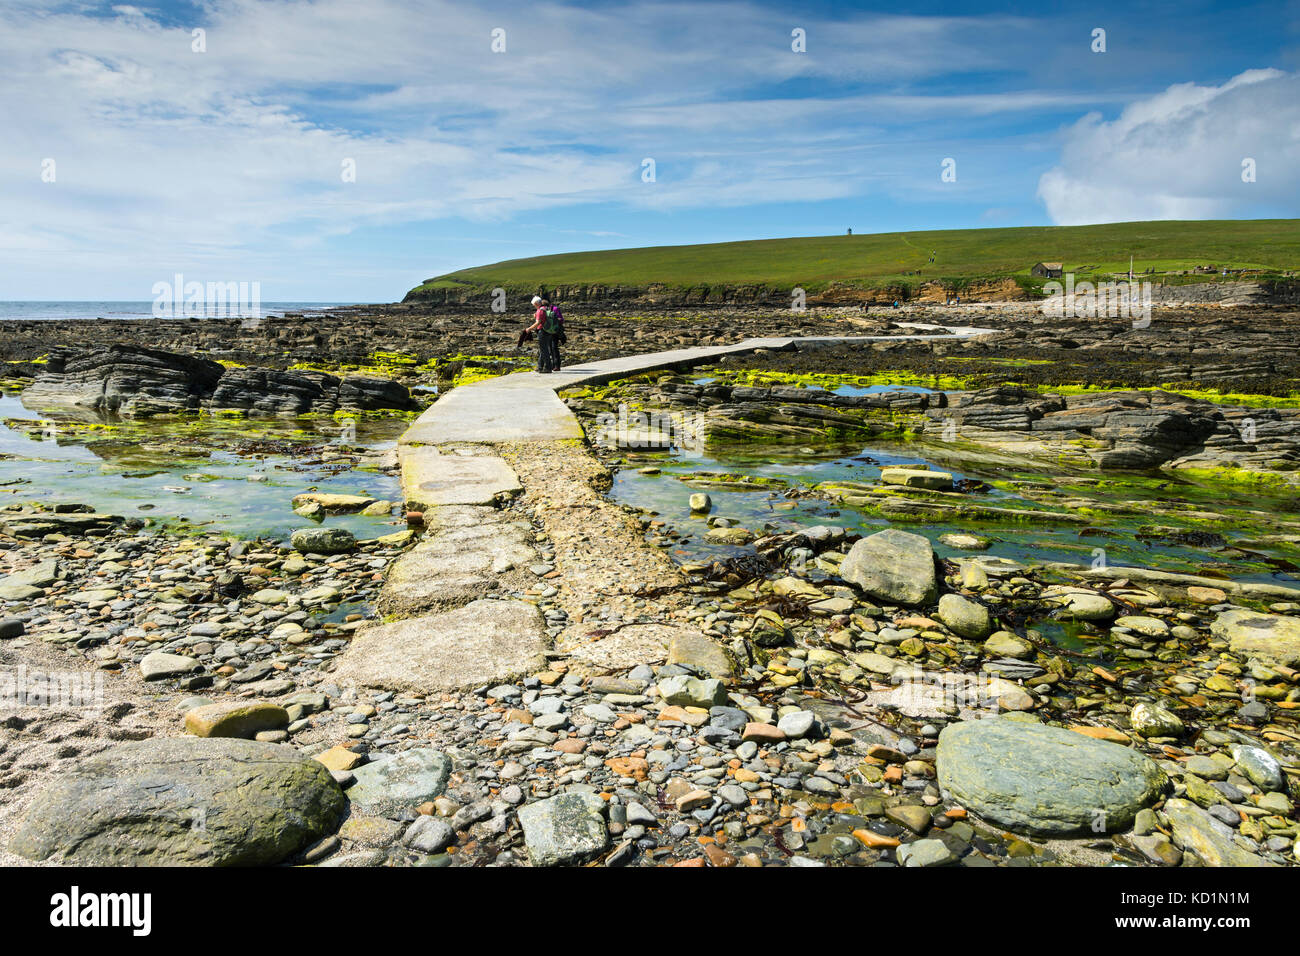 Der Damm, der zur Gezeiteninsel Brough of Birsay, Orkney, Schottland, Großbritannien, führt. Stockfoto